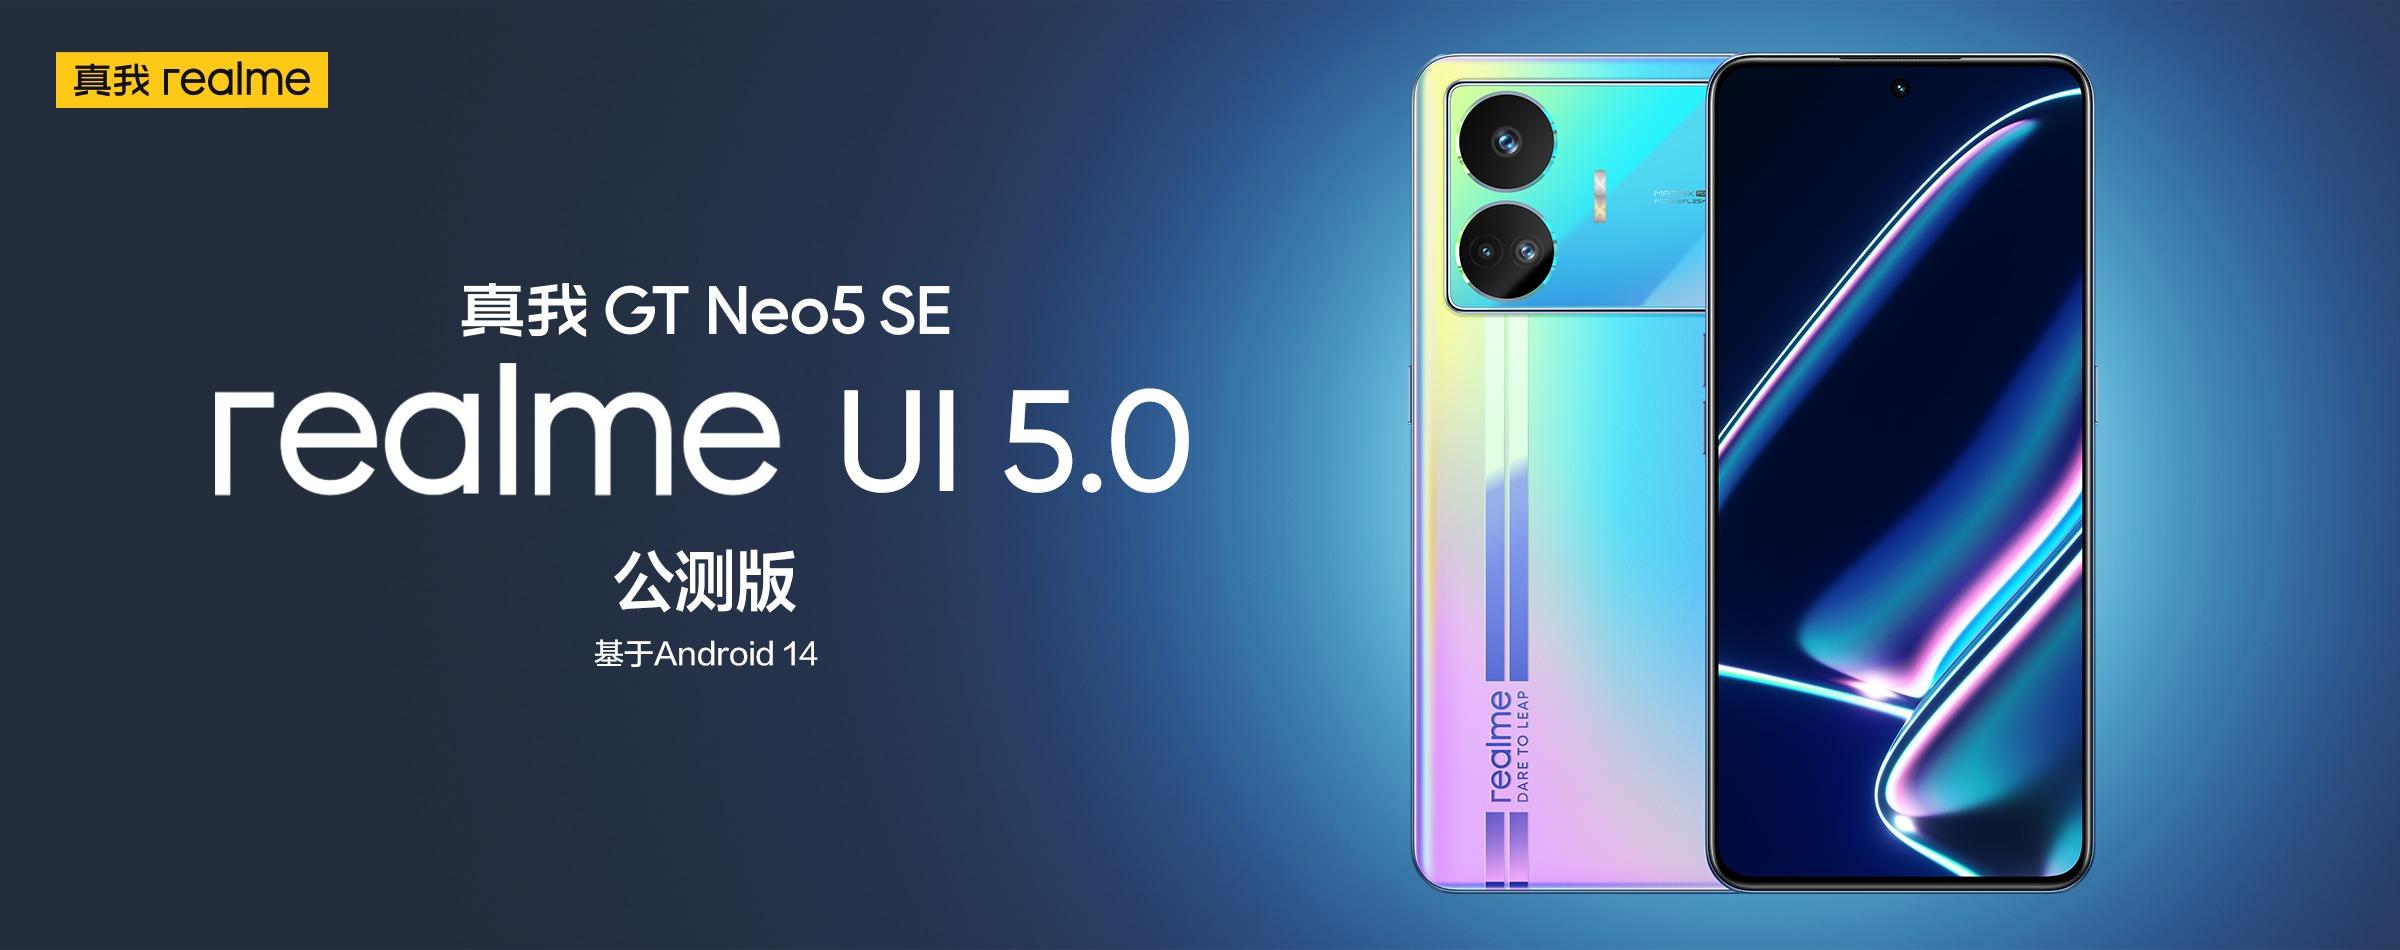 Le realme GT Neo 5 SE a reçu une version bêta de realme UI 5.0 basée sur Android 14.